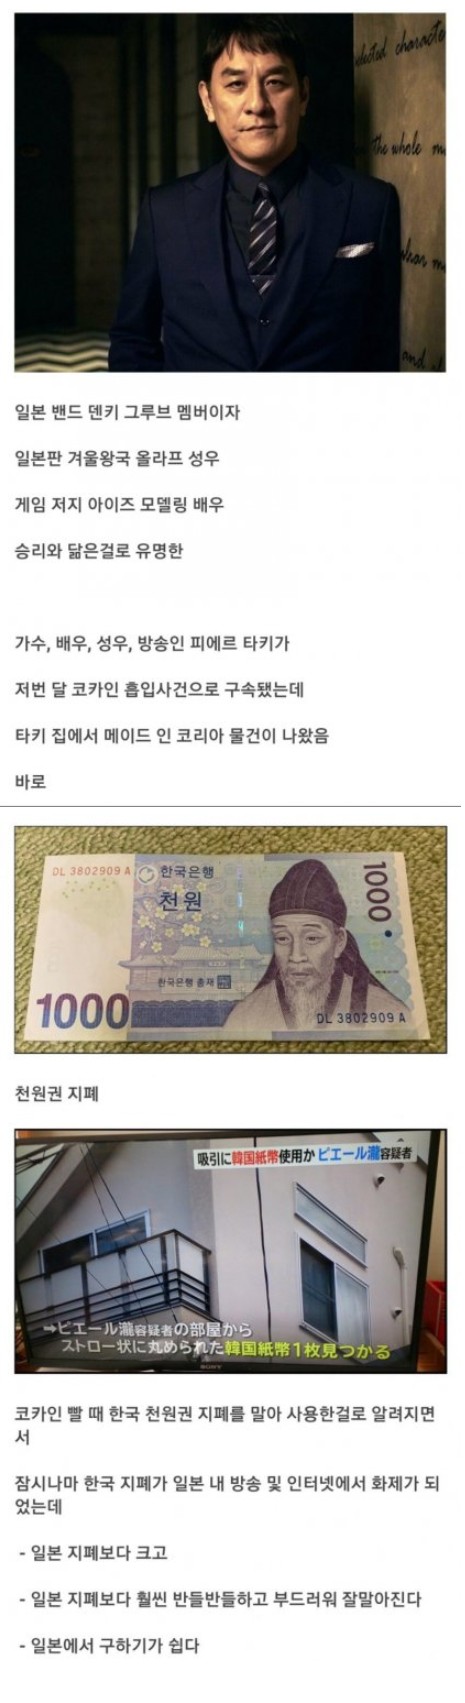 일본에서 화제가 된 한국 지폐 (feat. 빅뱅 승리 관상)